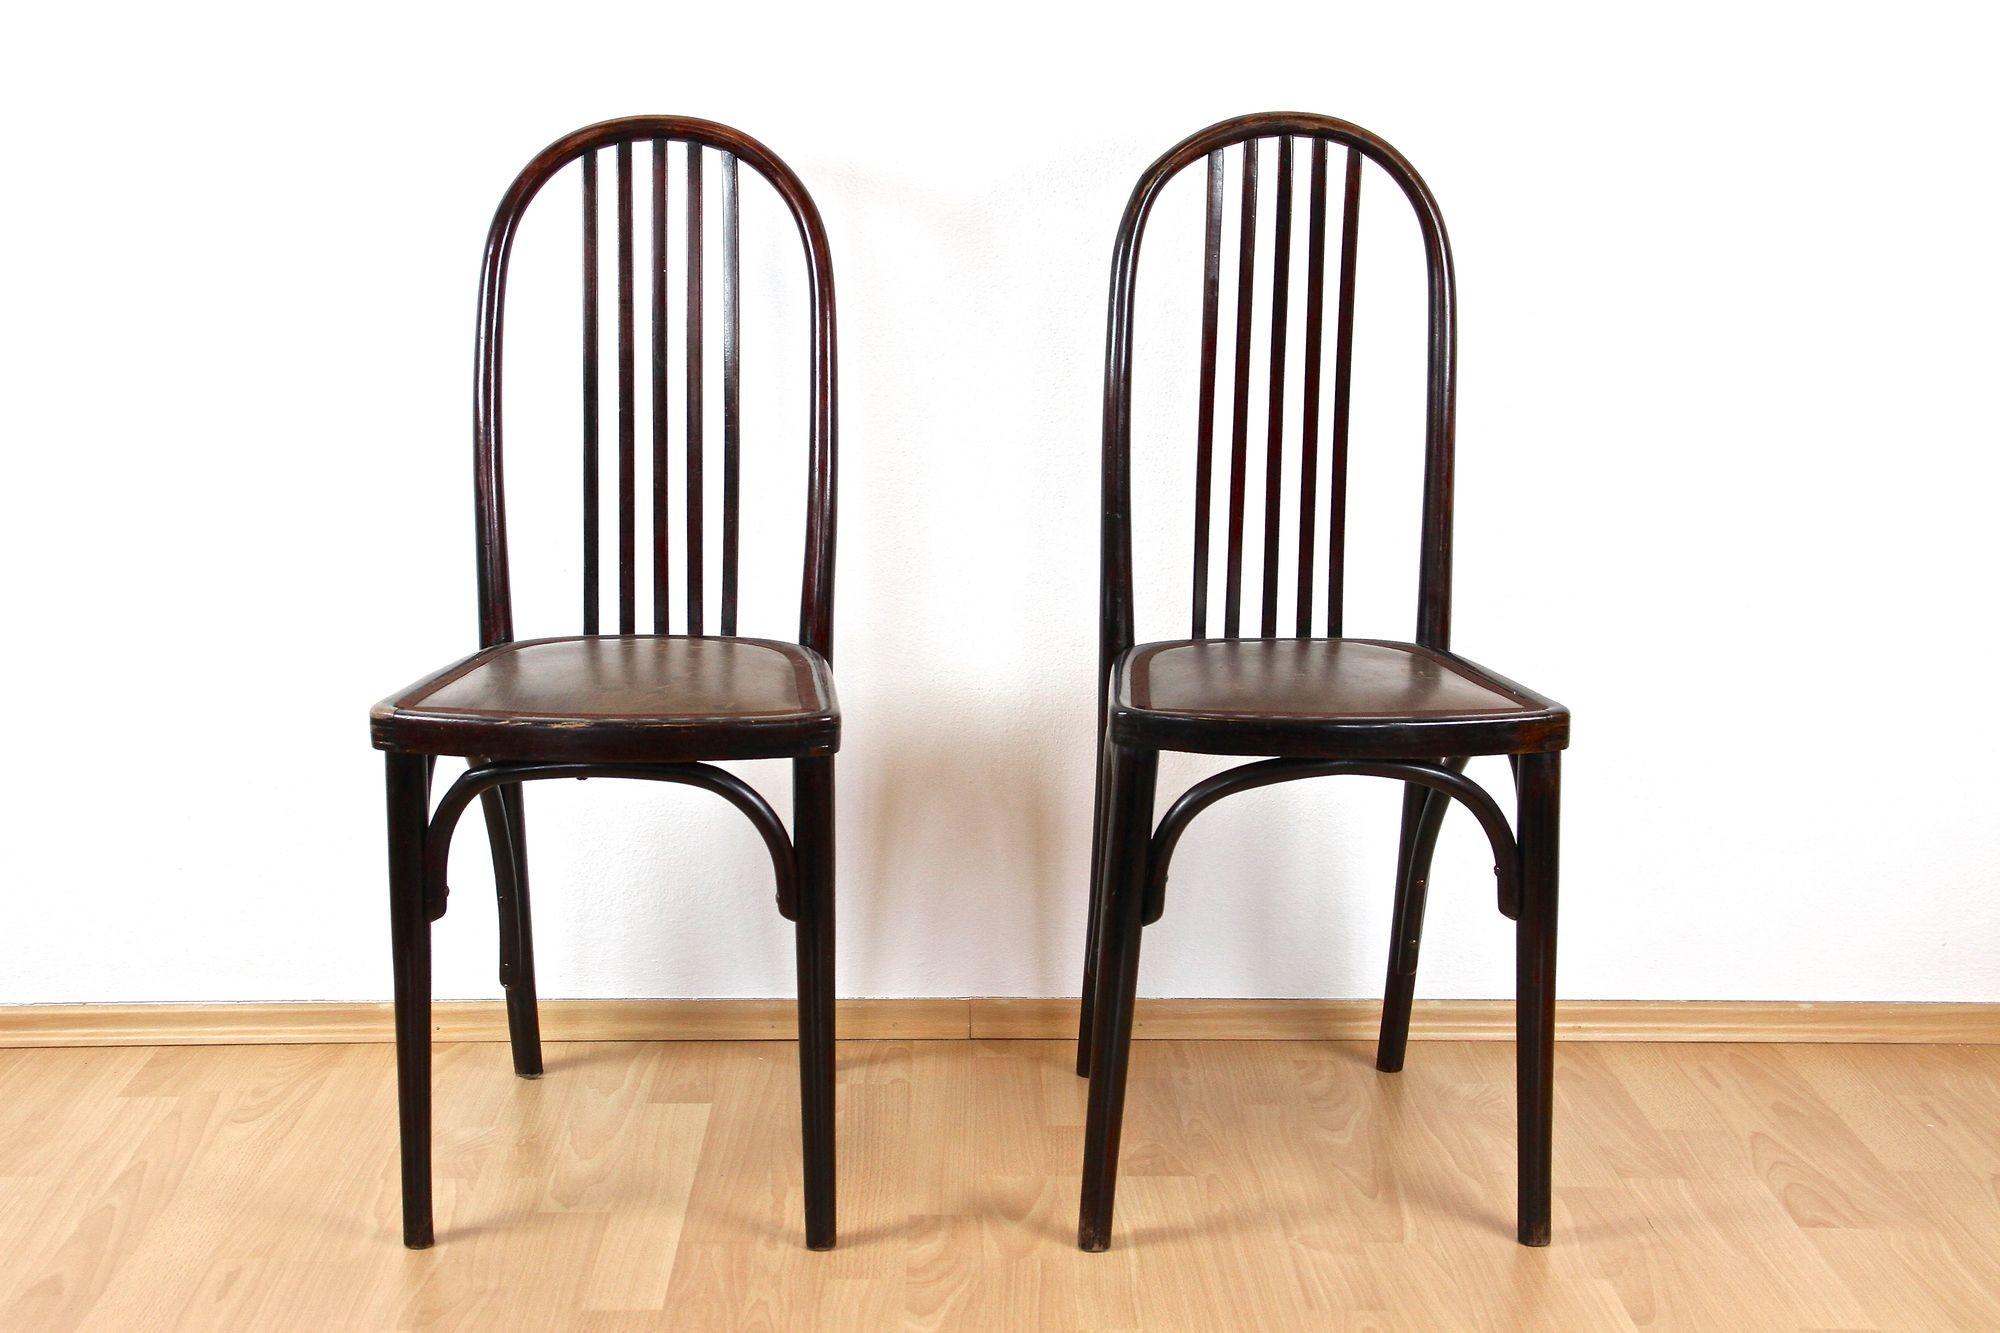 Sehr seltenes Paar der ersten Auflage(!) der Bugholzstühle von Thonet aus dem frühen 20. Jahrhundert, hergestellt von Thonet in Bohemia. Dieses berühmte Paar Thonet-Stühle im Jugendstil - Mod. 643 - wurde um 1906 von keinem Geringeren als dem